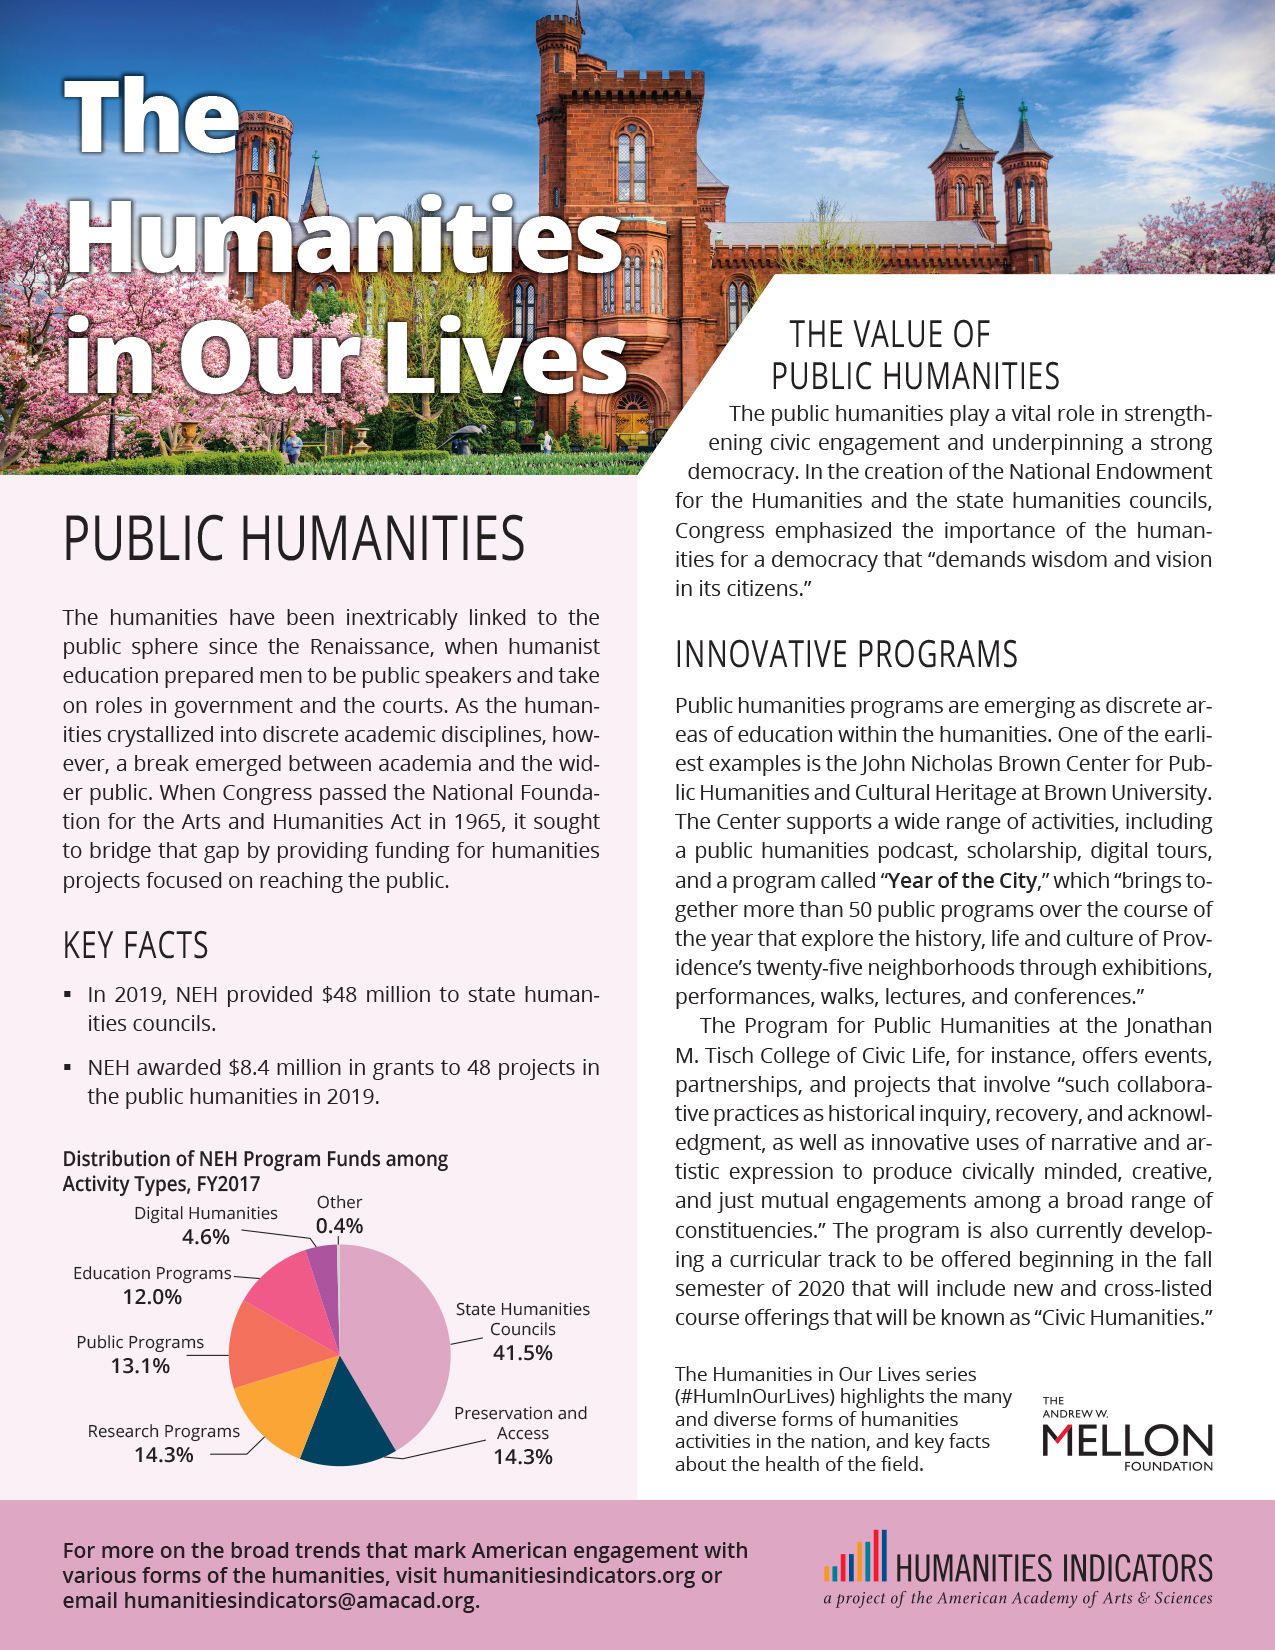 Public Humanities